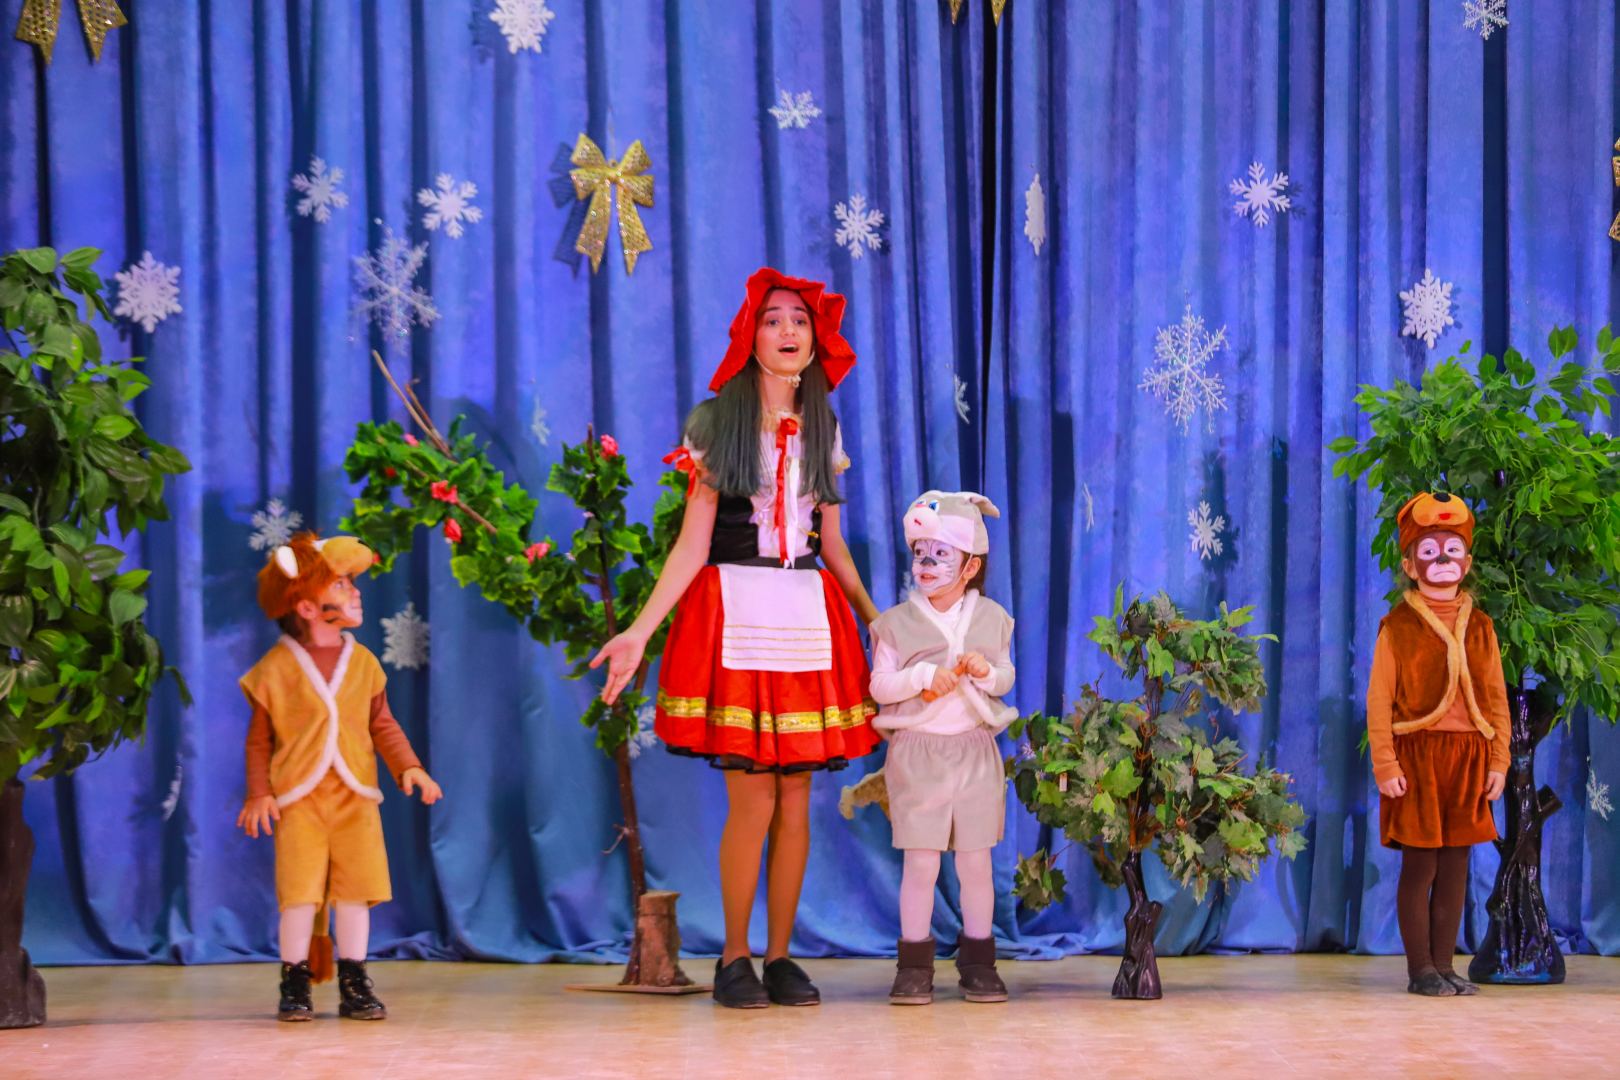 Новогодний праздник в Баку с песнями и танцами, сказочными персонажами (ВИДЕО, ФОТО)